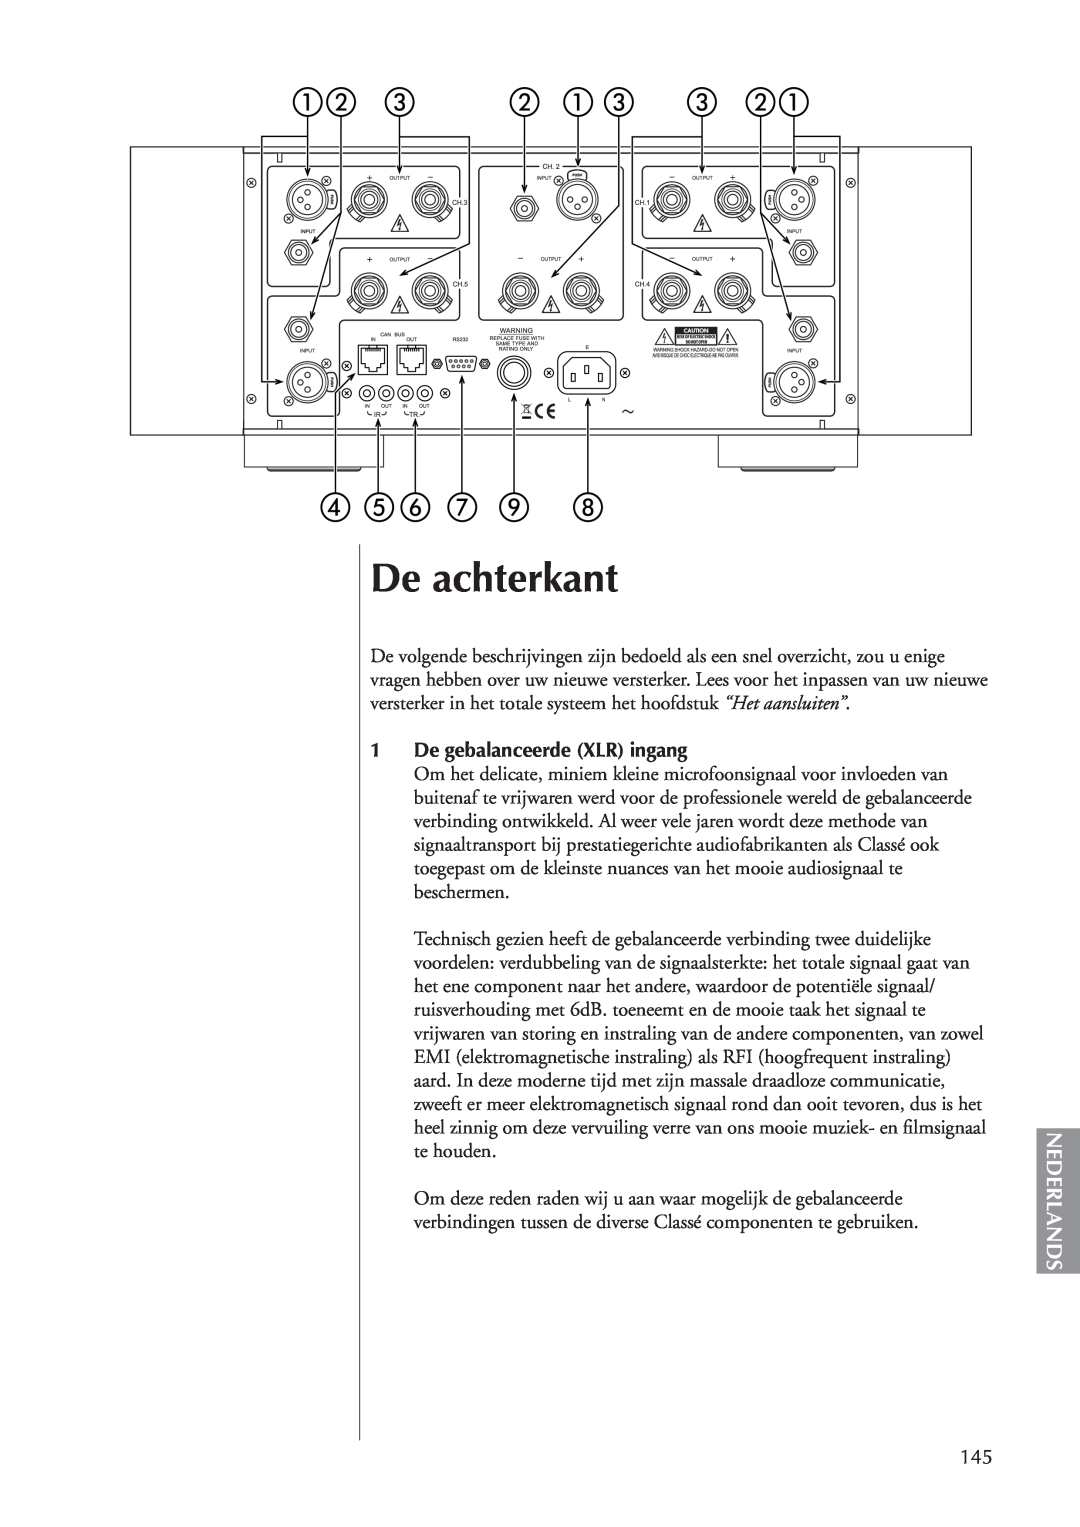 Classe Audio CA-5100 owner manual De achterkant, Nederlands, 1De gebalanceerde XLR ingang 